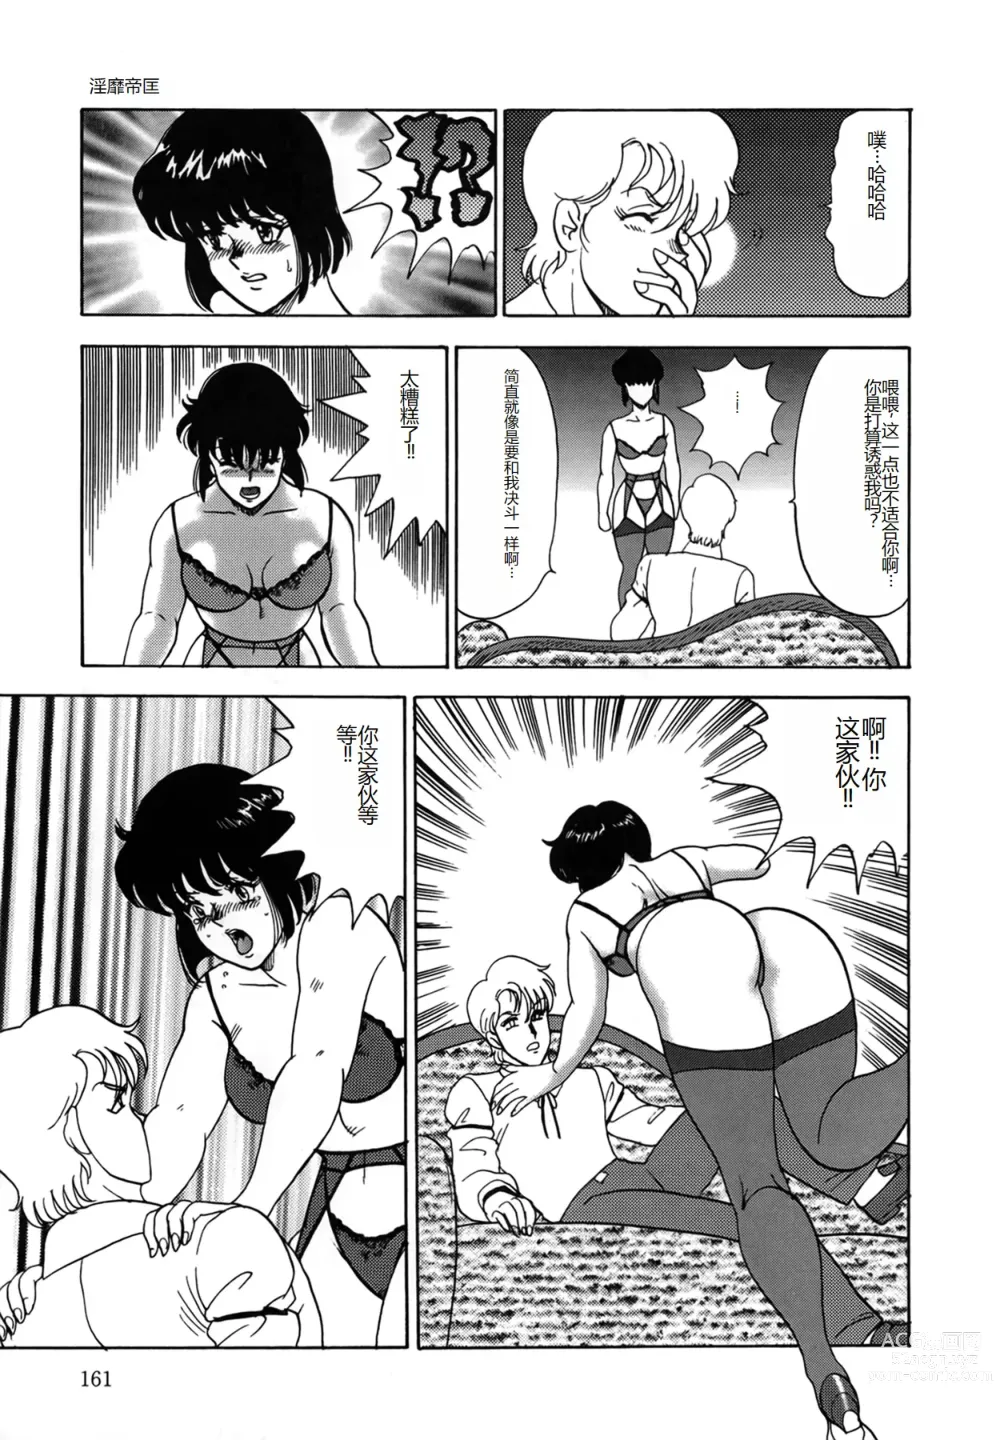 Page 161 of manga Inbi Teikoku